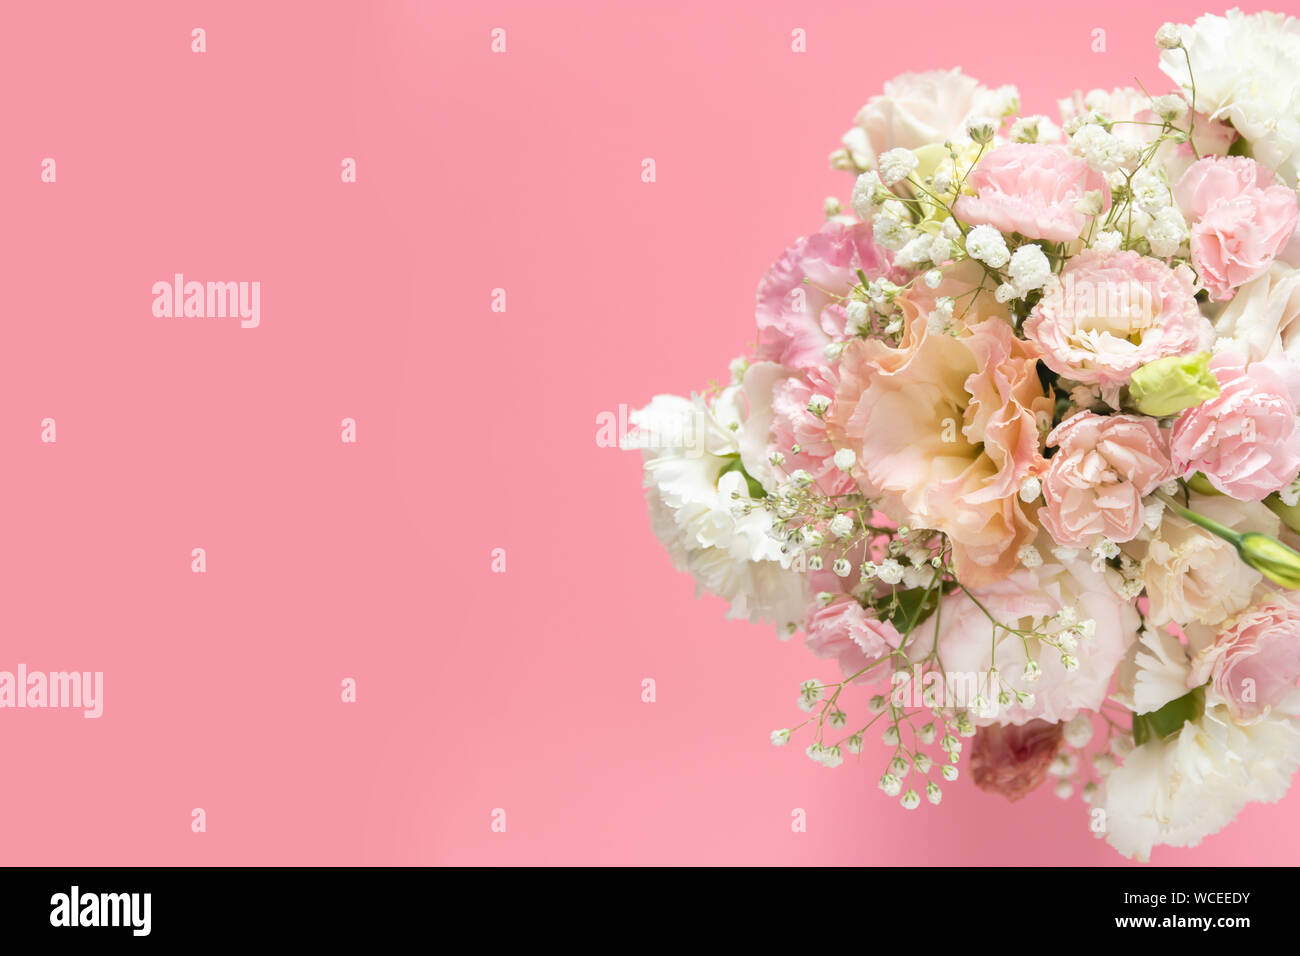 Blick von oben auf die wunderschönen, romantischen Blumenstrauß frischen Frühling Blumen auf rosa Hintergrund mit Kopie Raum Stockfoto